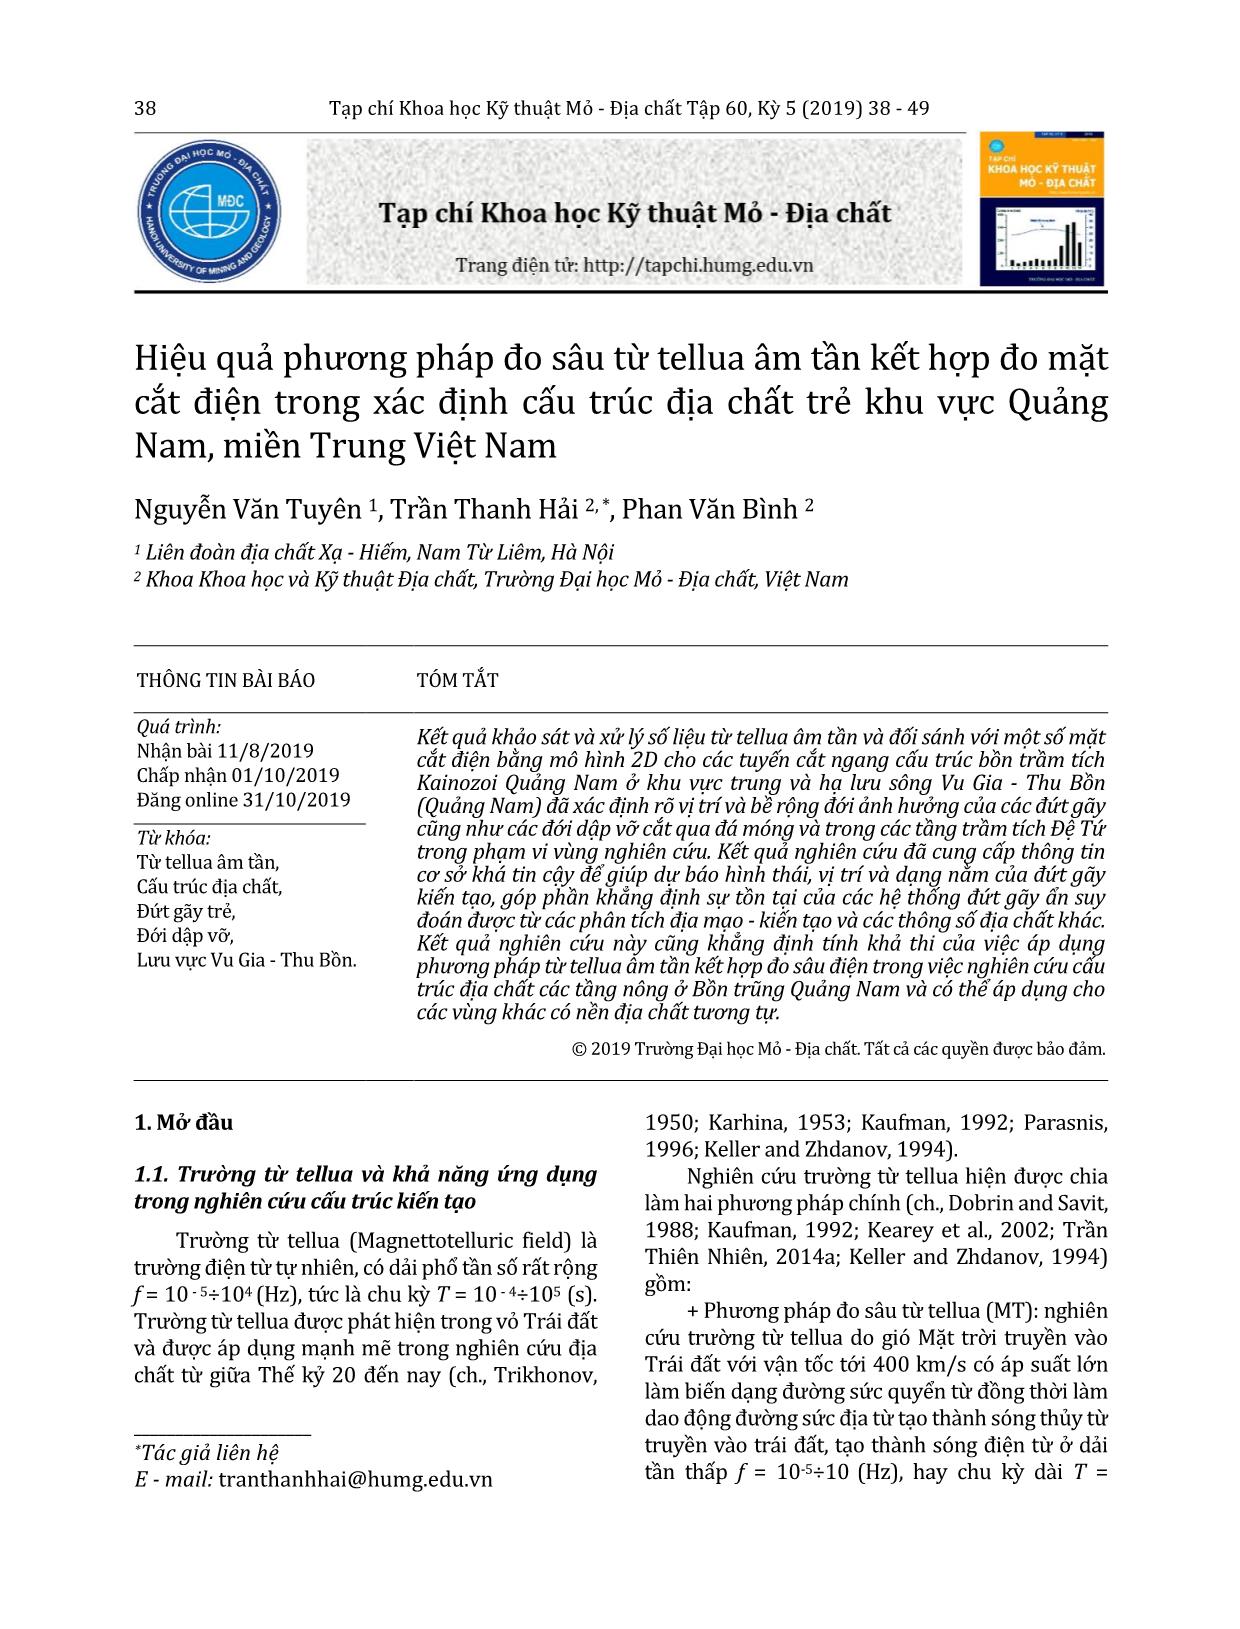 Hiệu quả phương pháp đo sâu từ tellua âm tần kết hợp đo mặt cắt điện trong xác định cấu trúc địa chất trẻ khu vực Quảng Nam, miền Trung Việt Nam trang 1